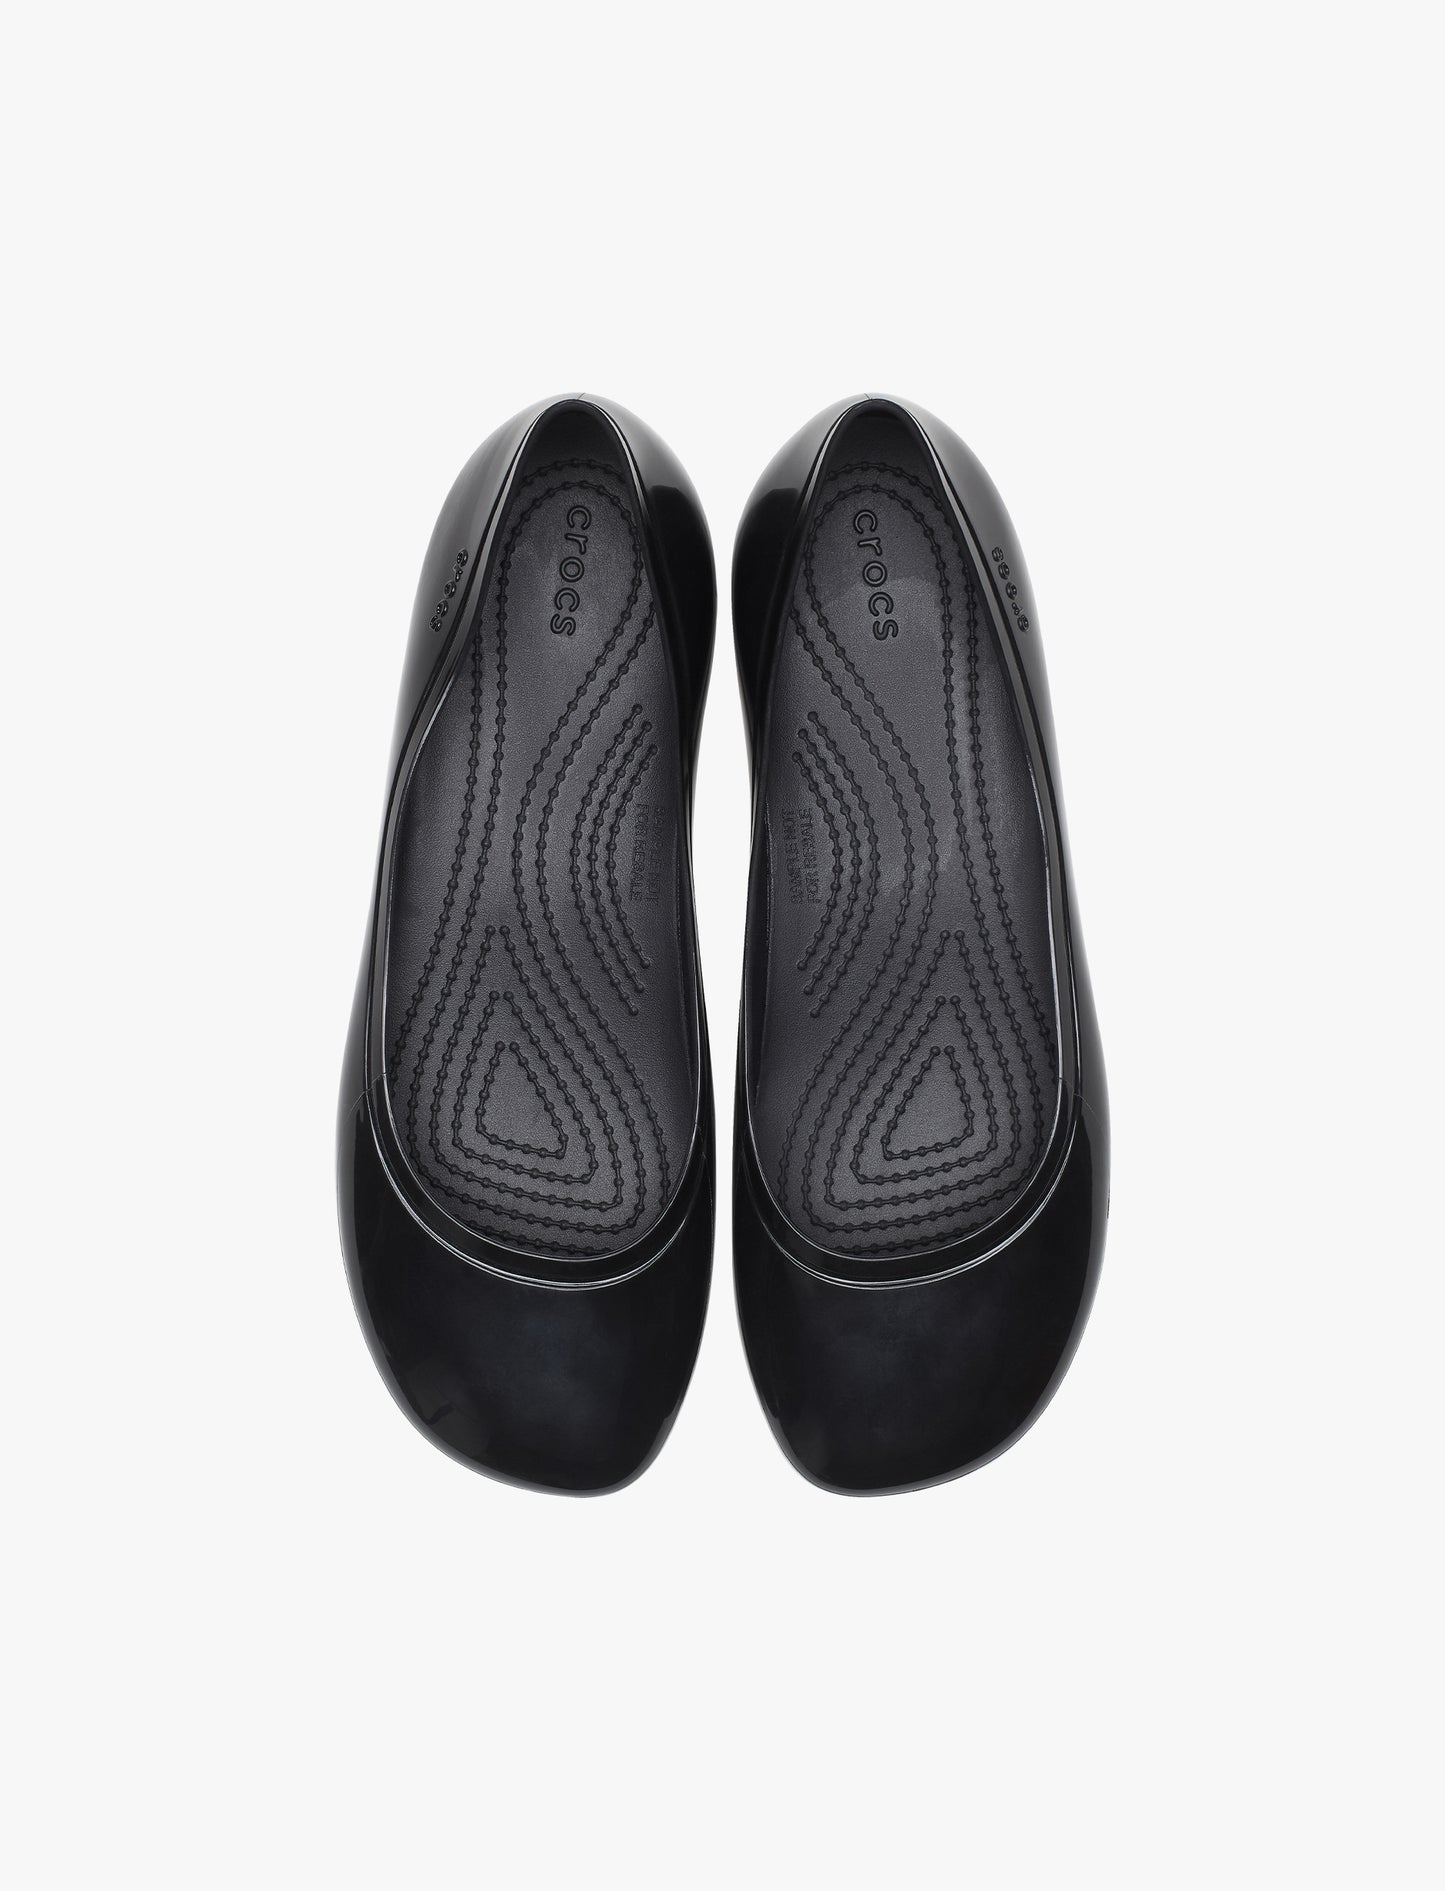 Crocs Brooklyn High Shine Flat - נעלי קרוקס שטוחות לנשים בצבע שחור